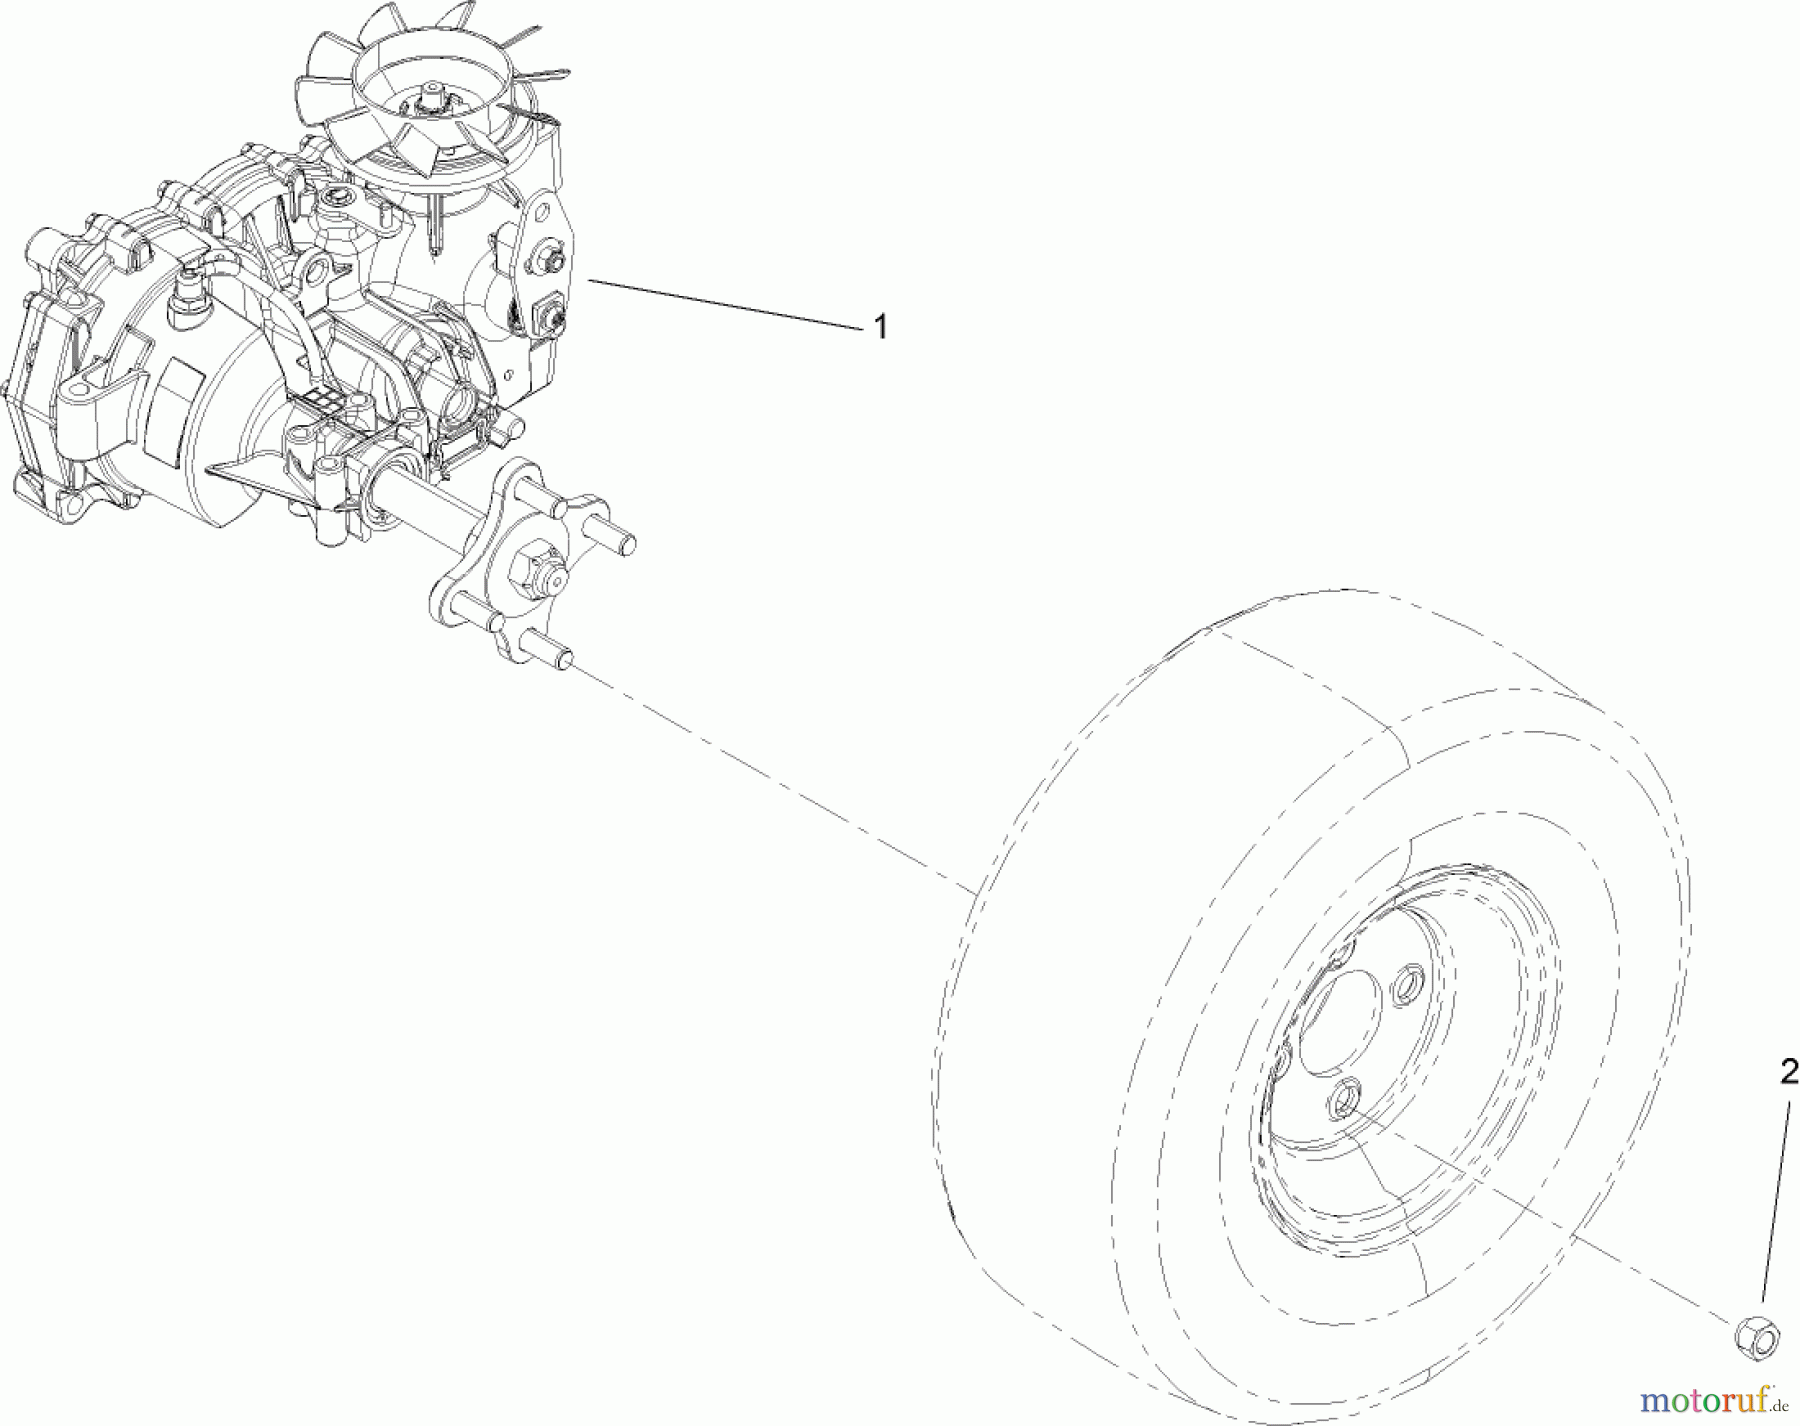  Toro Neu Accessories, Mower 114-8521 - Toro Left-Hand Transaxle Kit, Zero-Turn-Radius Riding Mower TRANSAXLE AND NUT ASSEMBLY